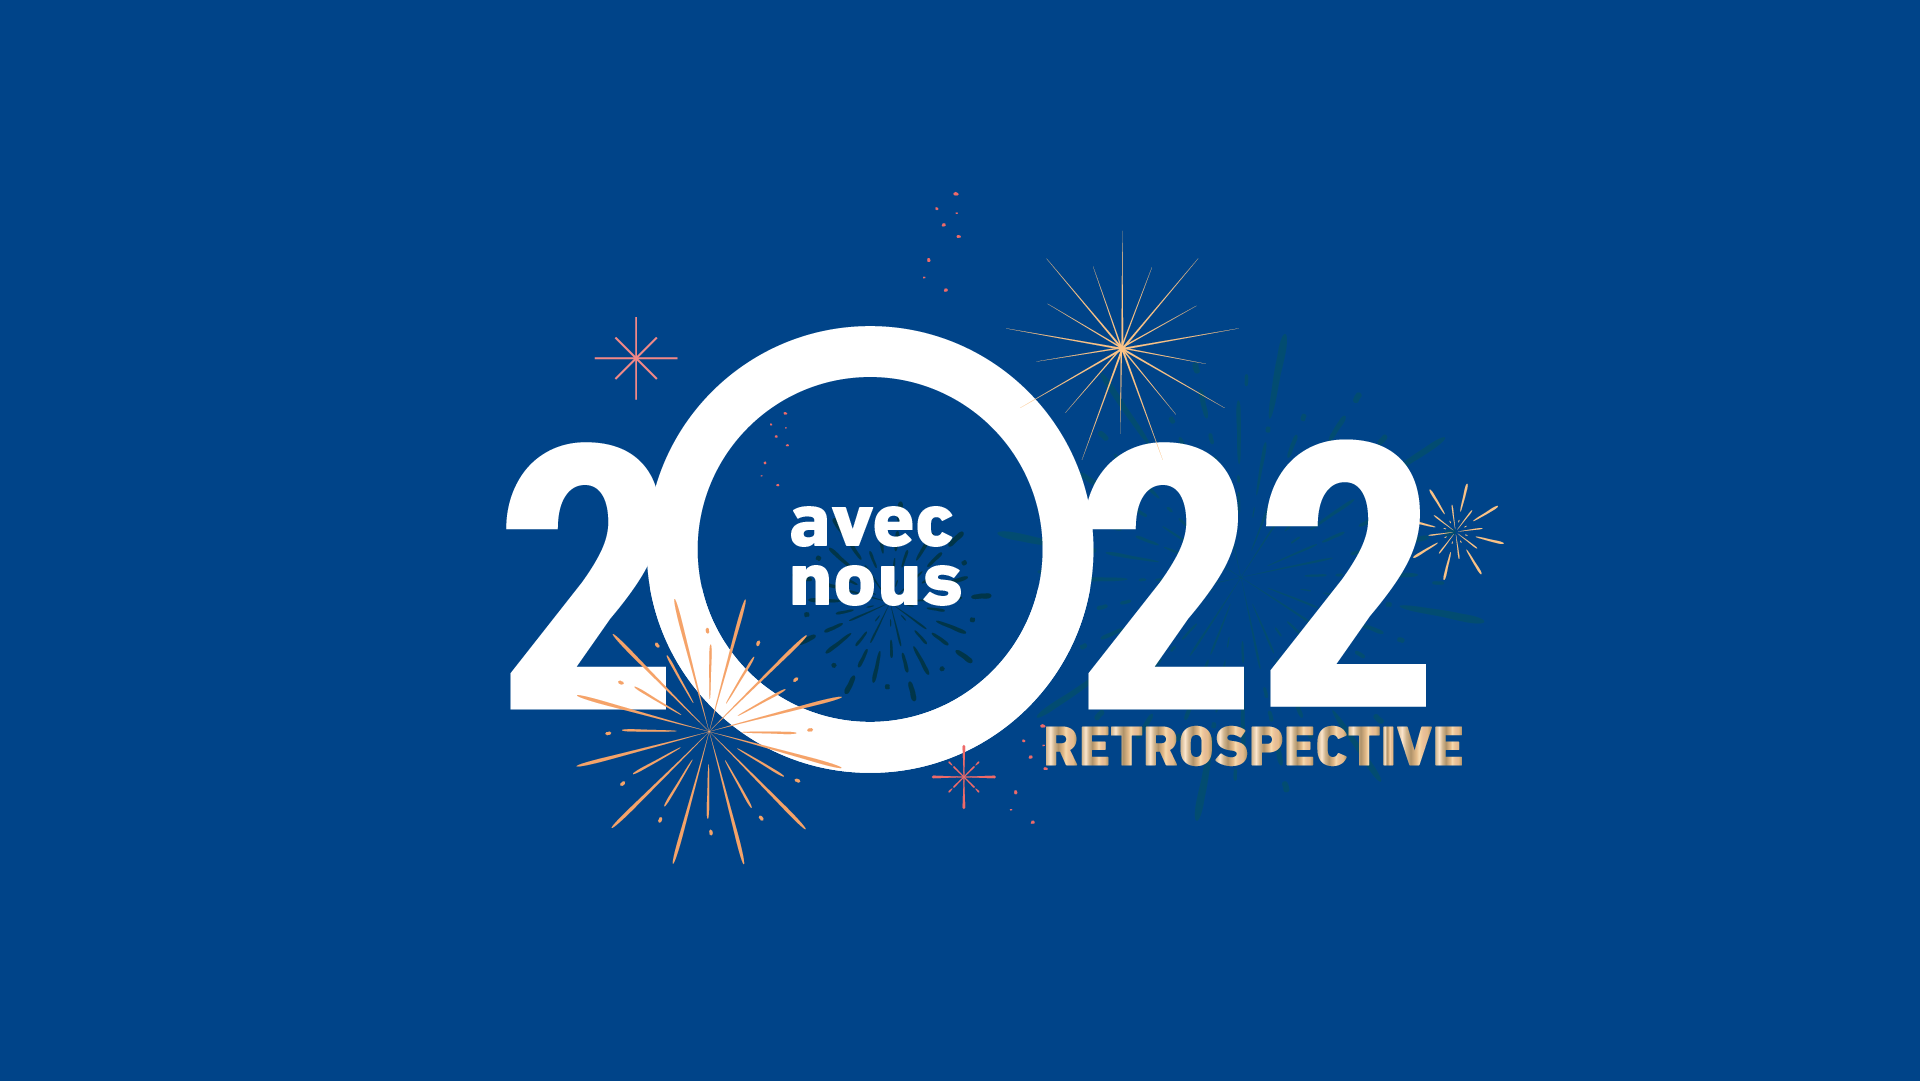 Retour sur les moments forts de l’année 2022 | Meilleurs vœux 2023 !